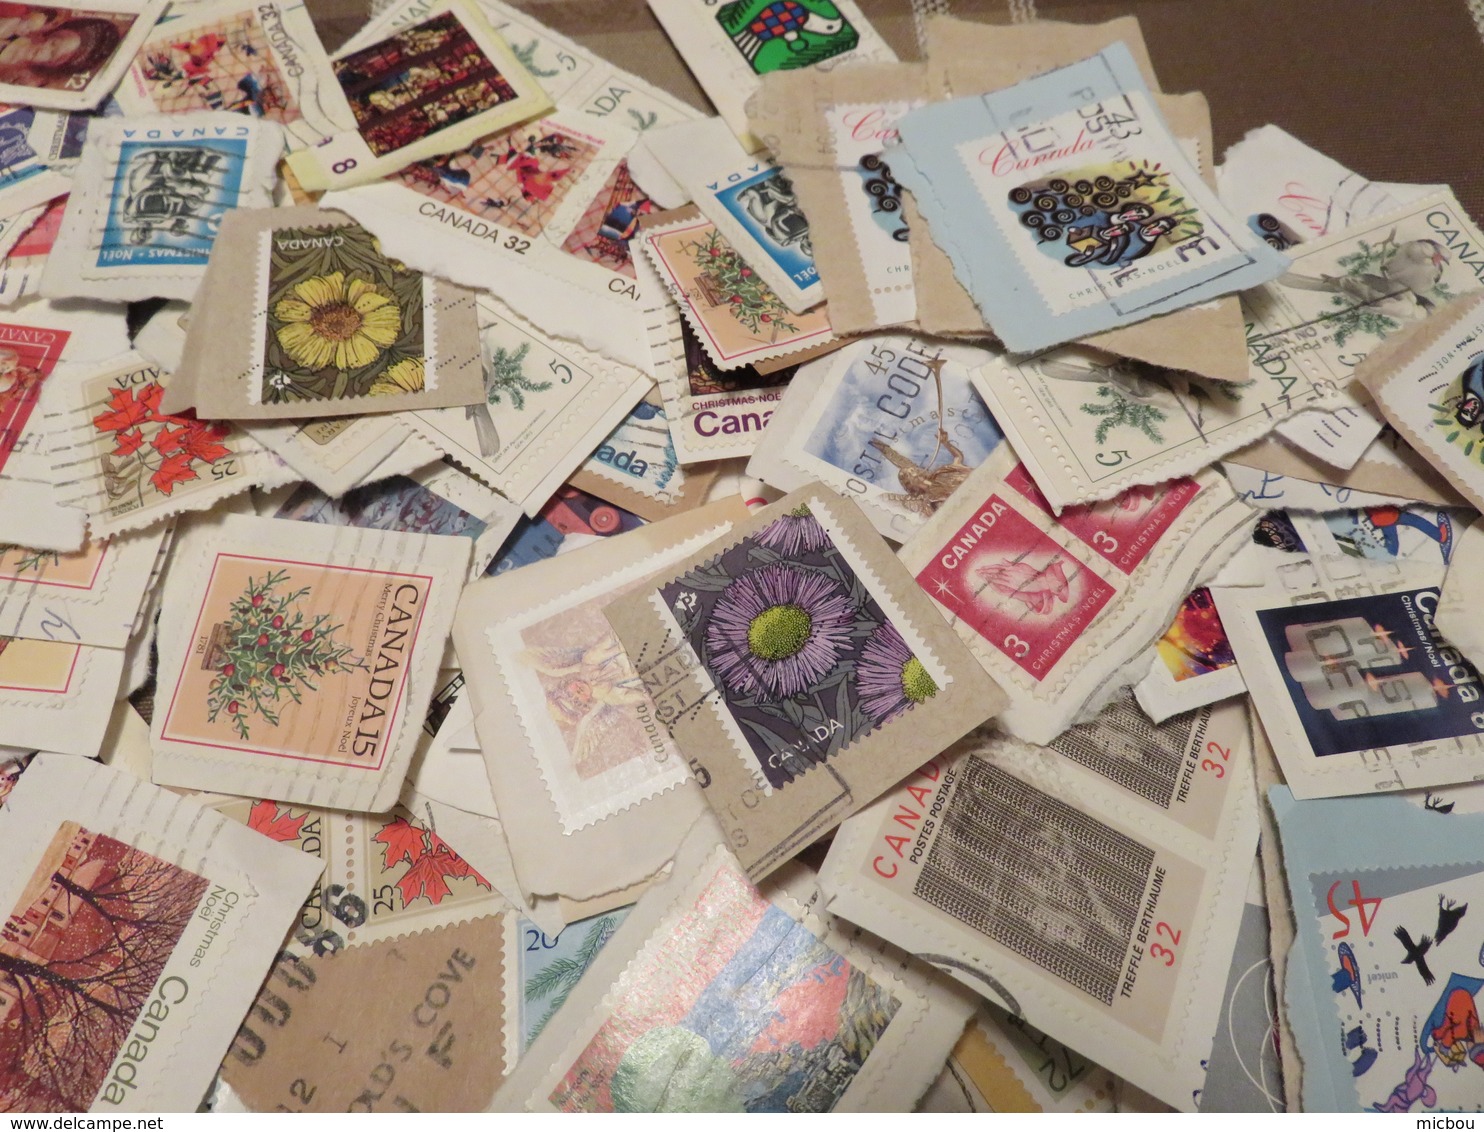 ##KK, Canada, vrac, plus de 750 timbres commémoratifs, more than 750 commemorative stamps